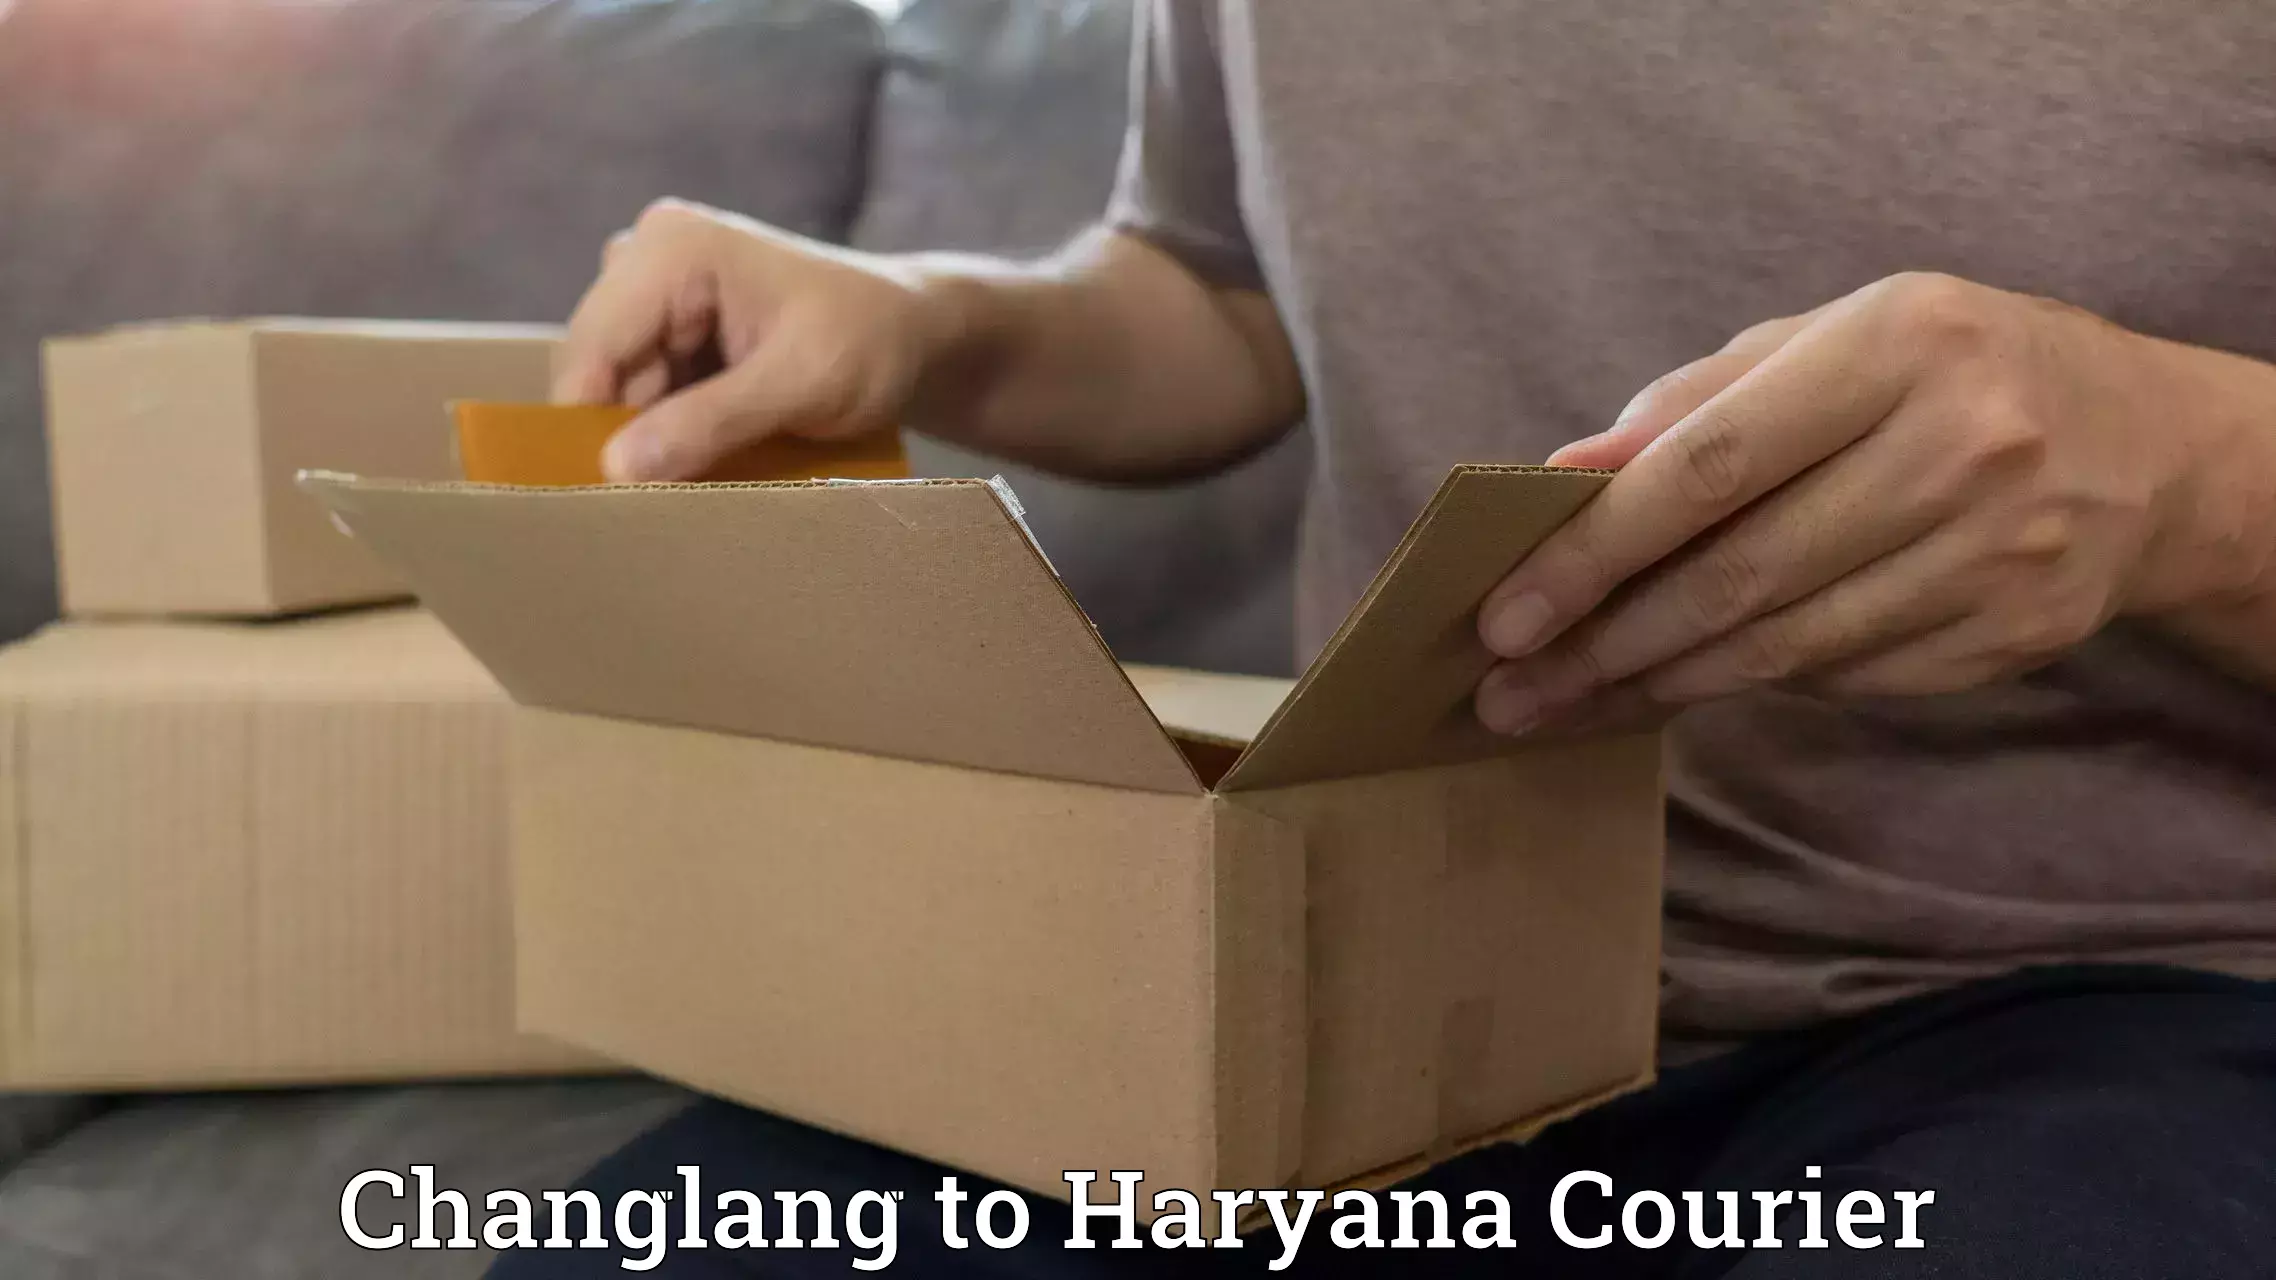 Courier app Changlang to Jhajjar